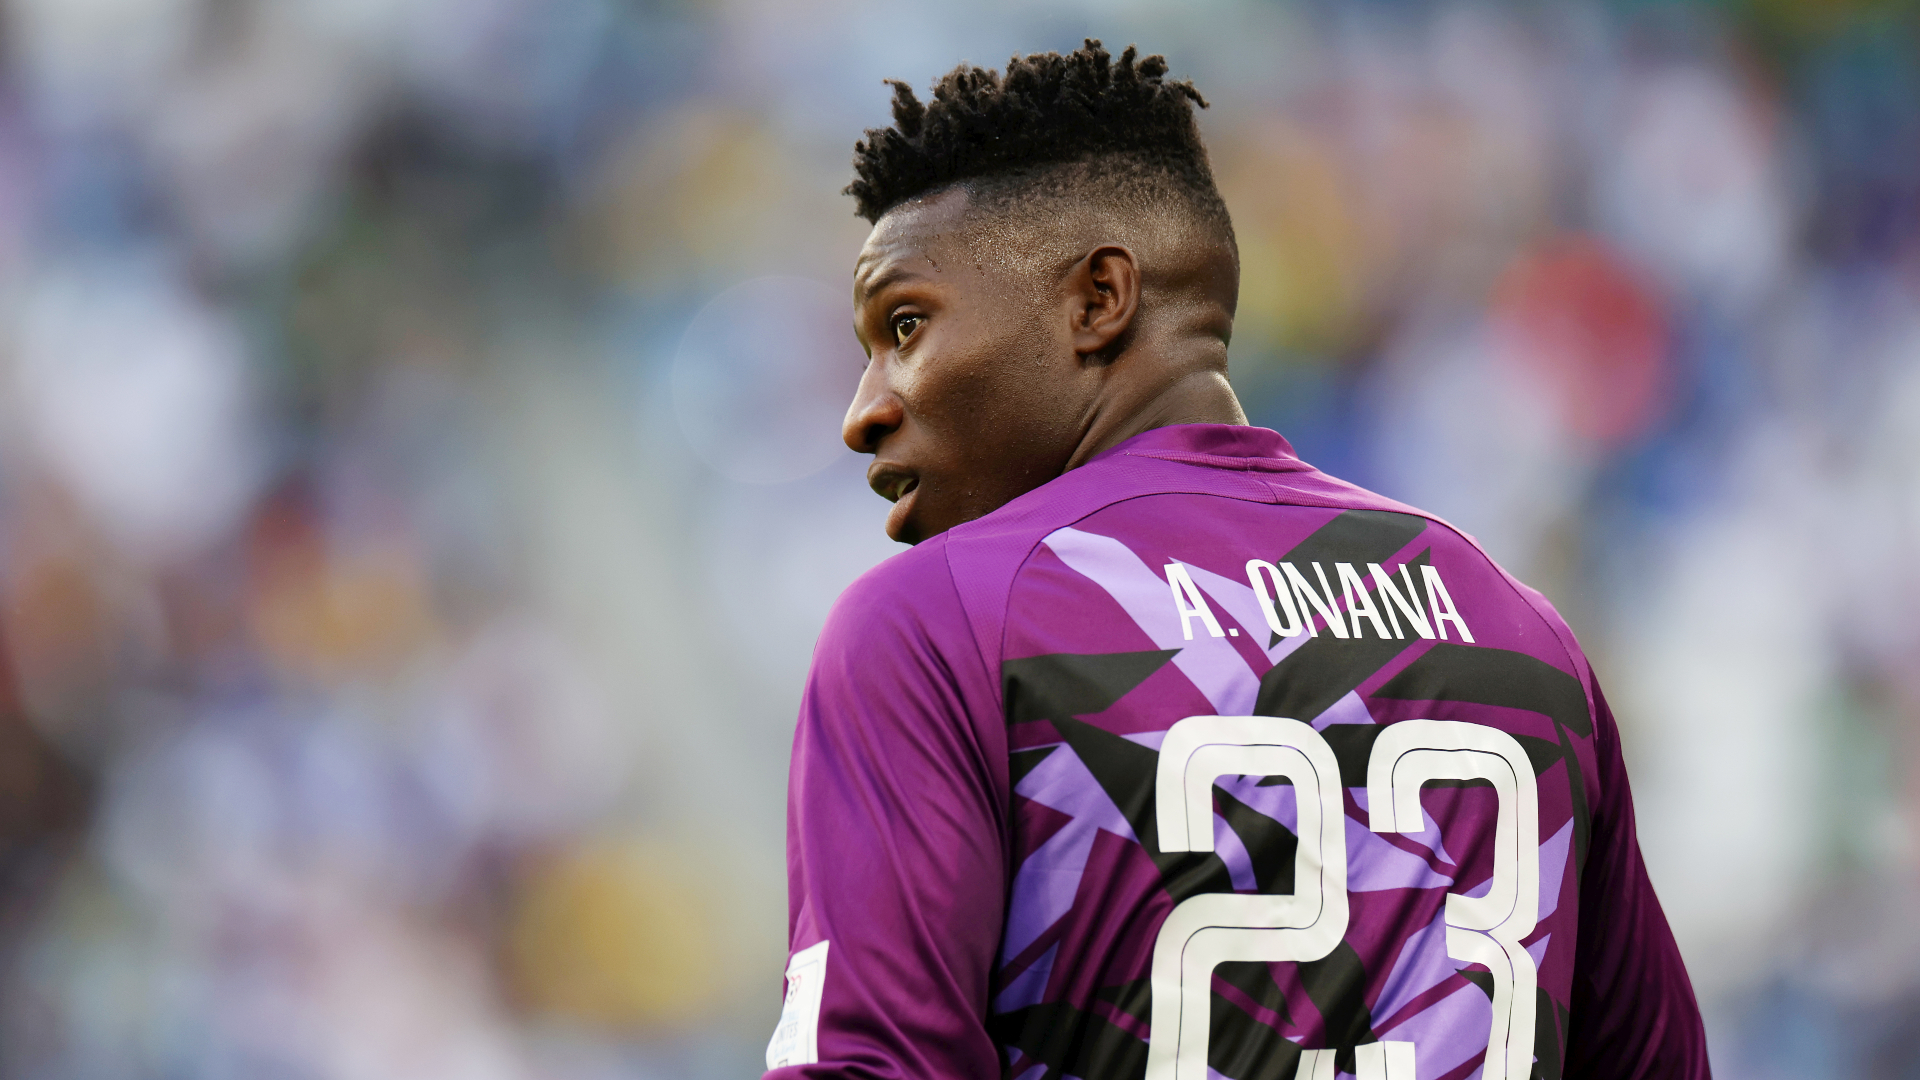 Onana anunció su retiro de la Selección de Camerún tras su abrupta salida del Mundial